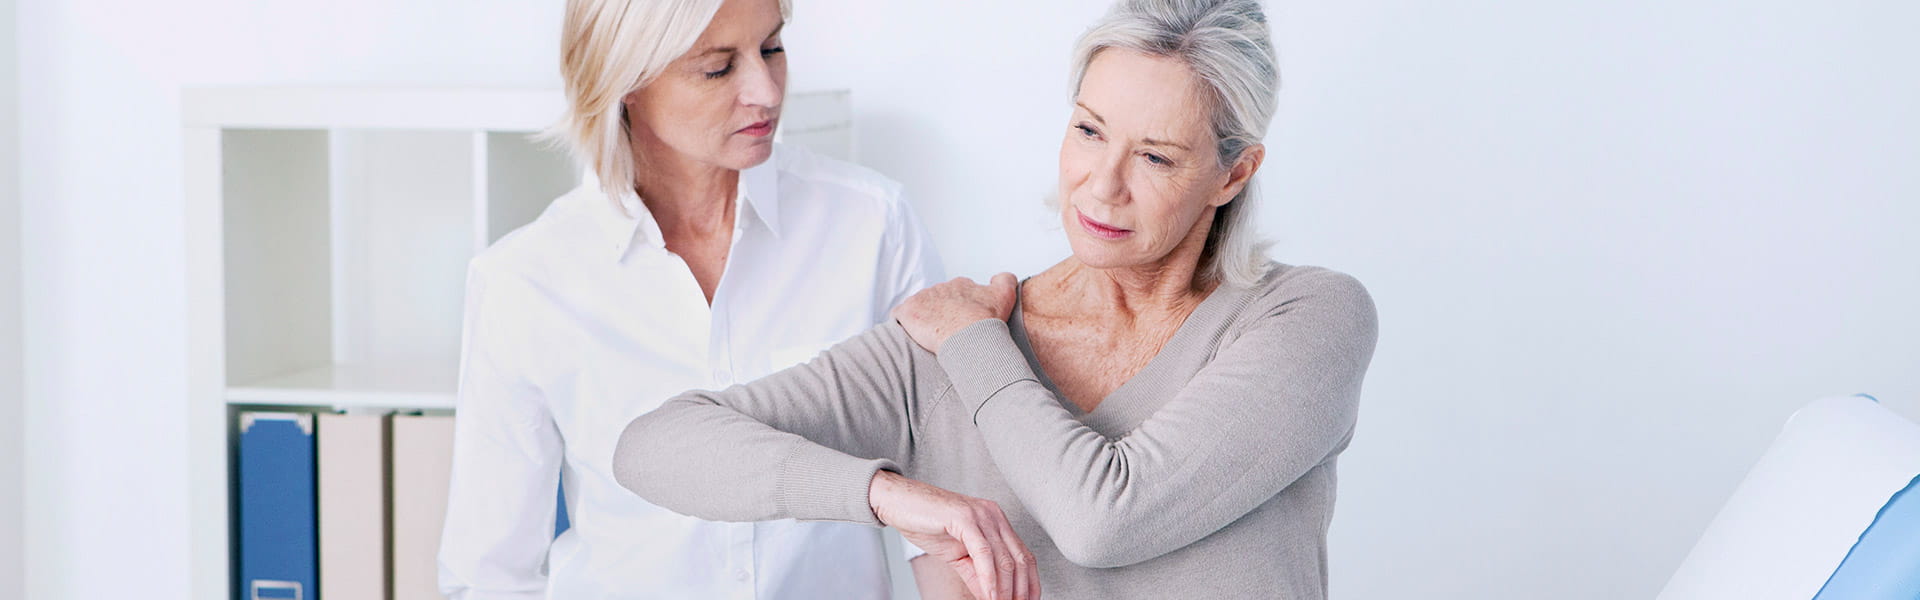 women touching shoulder in pain